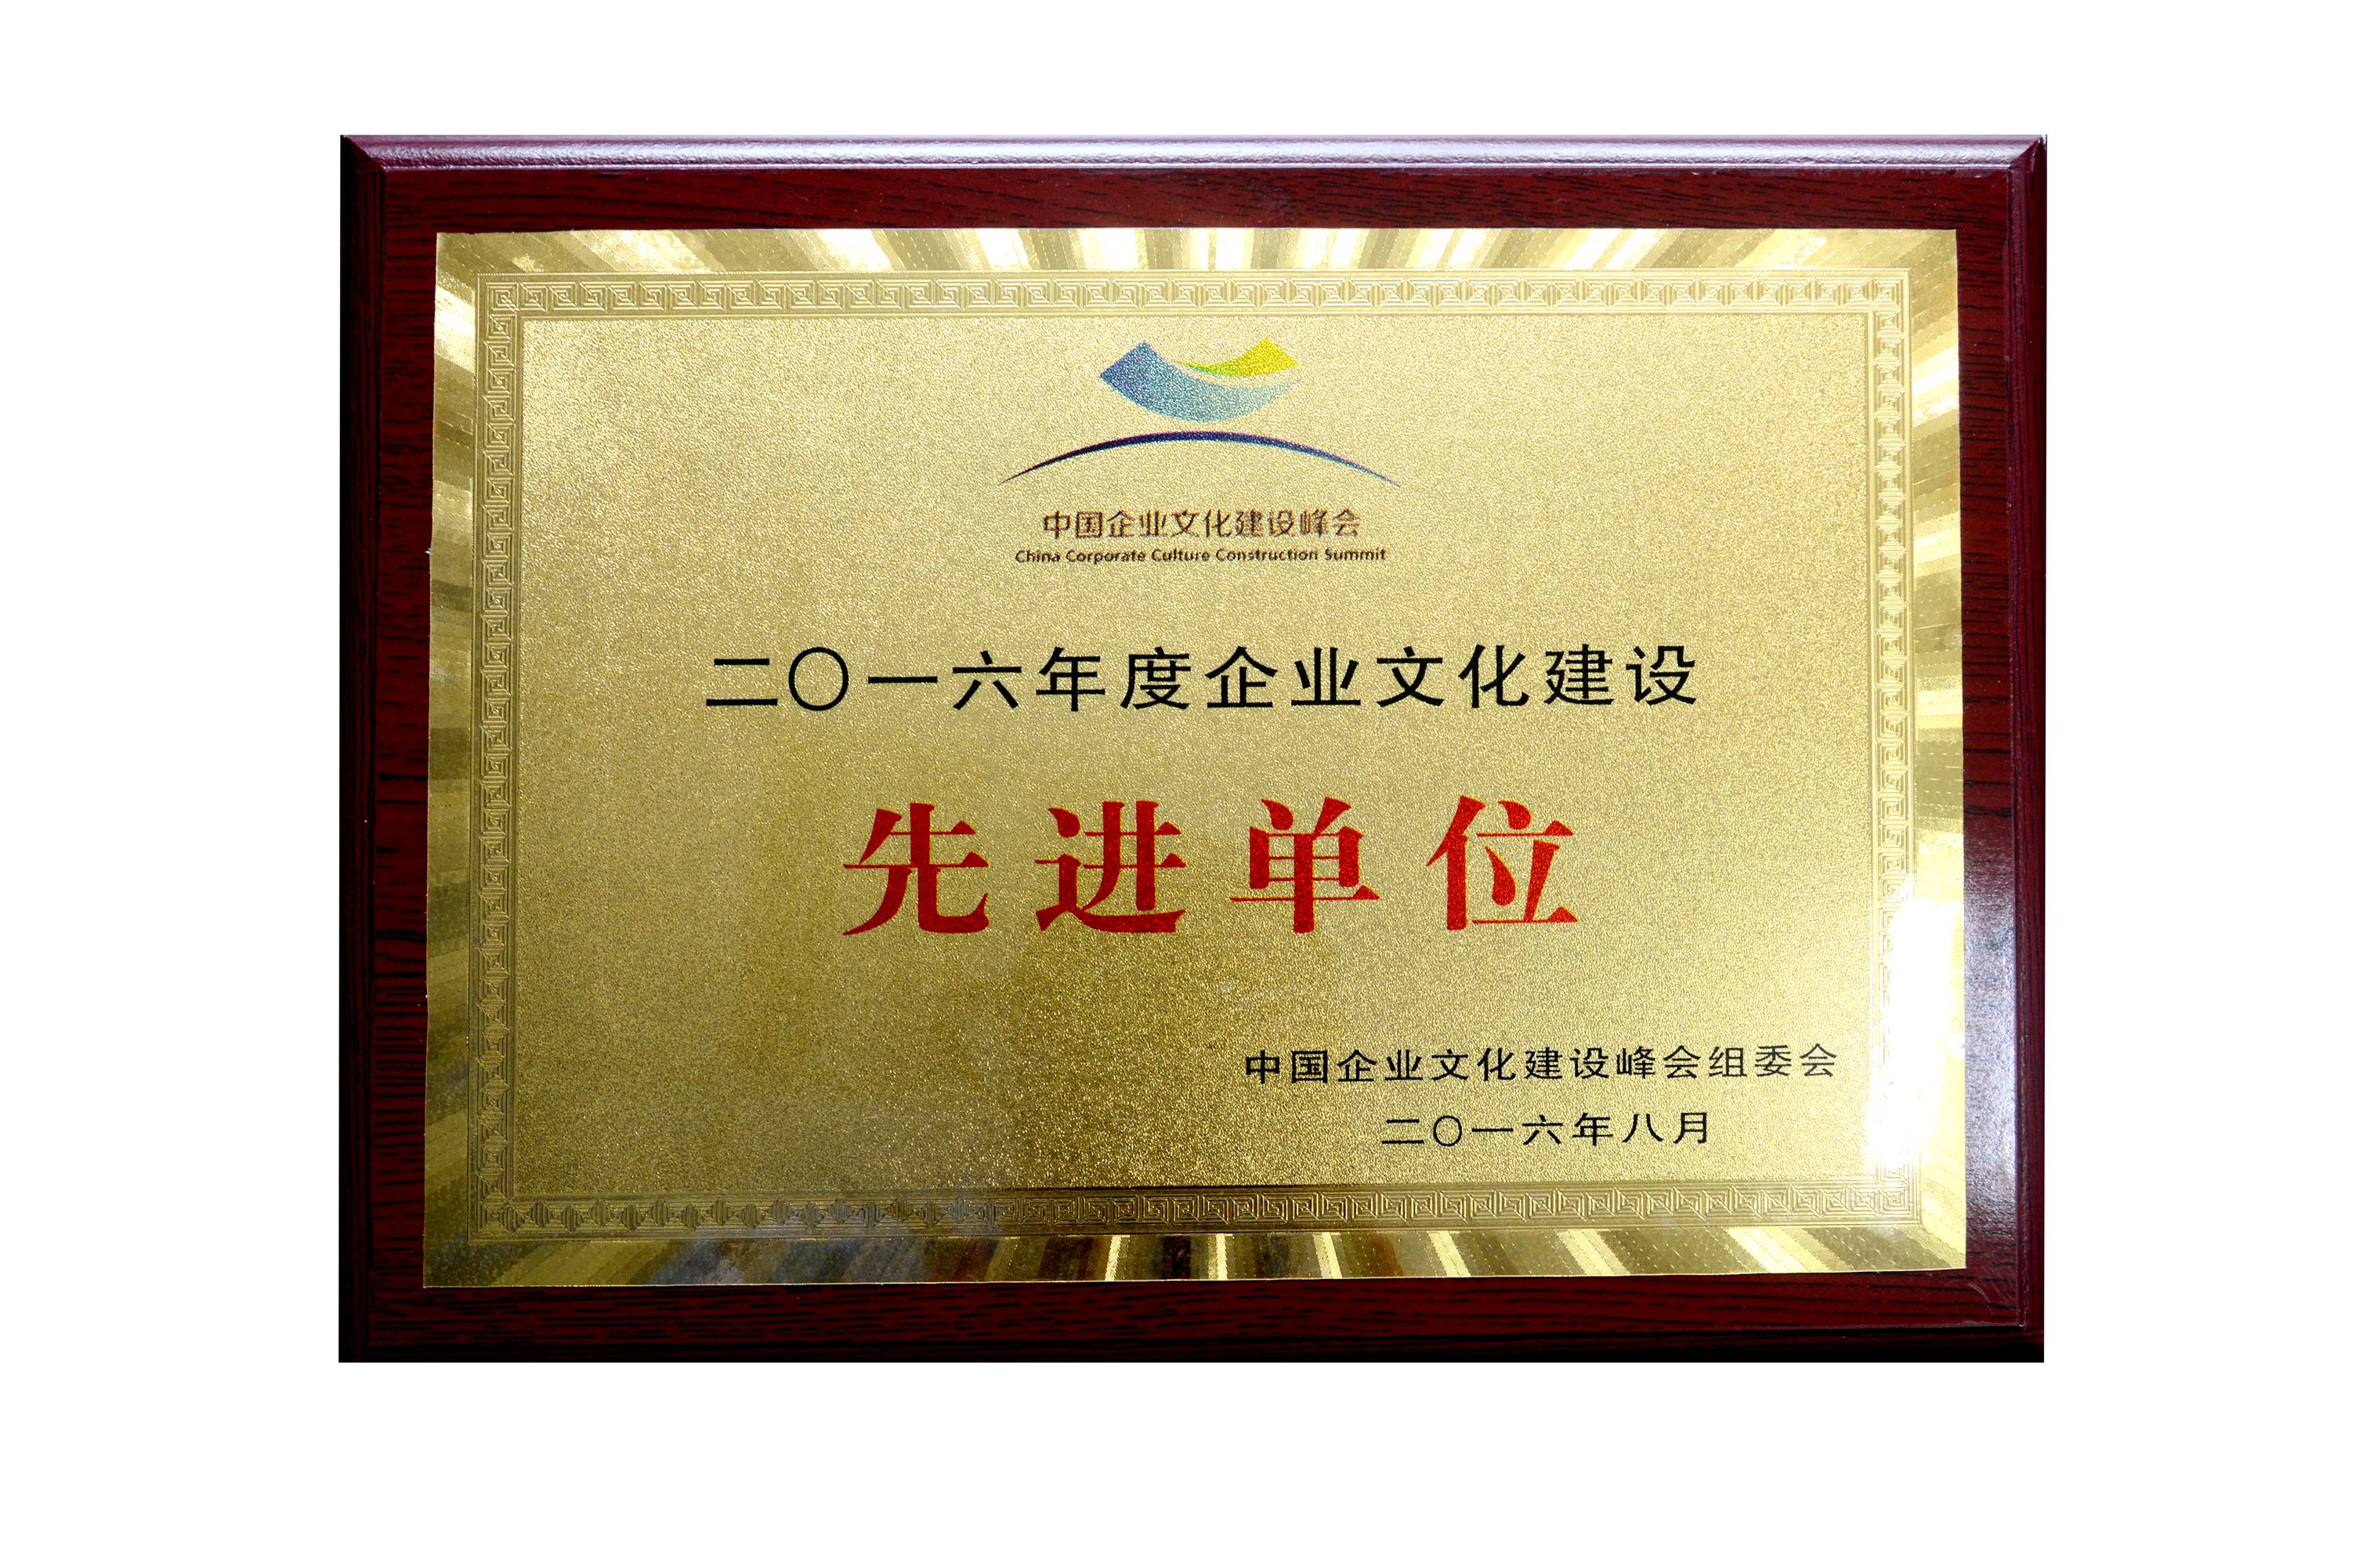 彩虹集团董事长刘荣富荣获"2016年度全国企业文化建设优秀工作者"称号